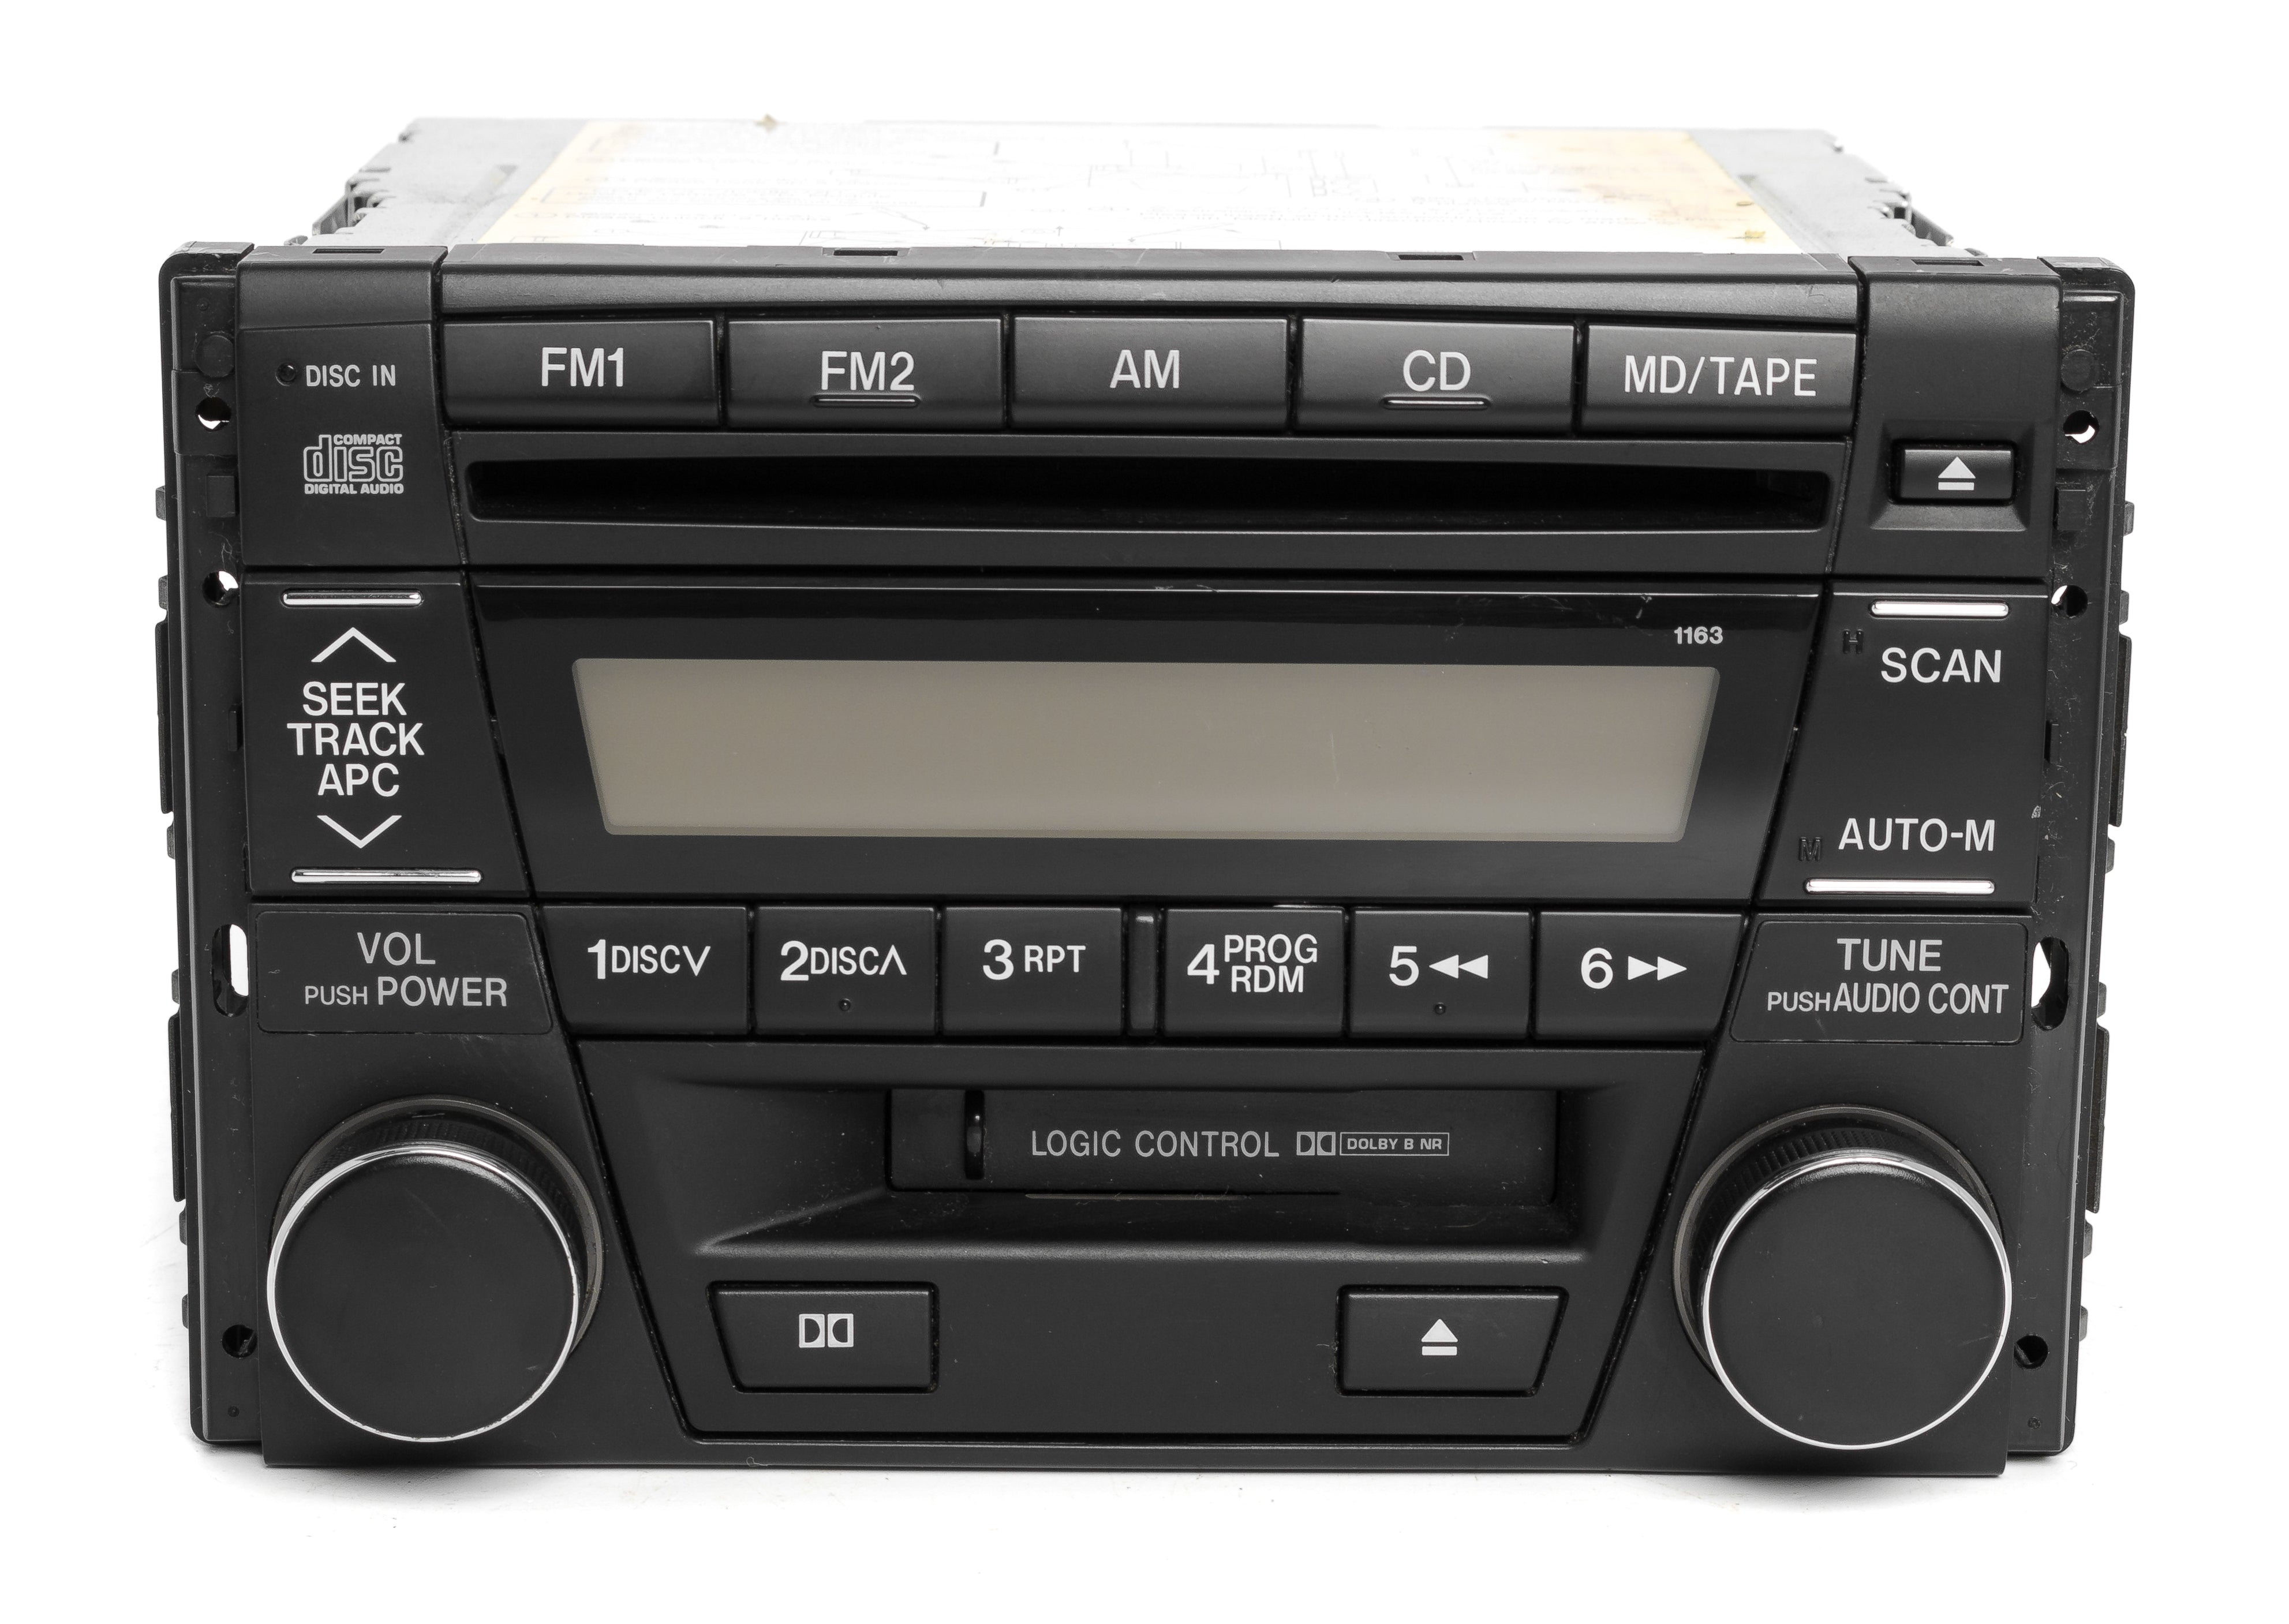 Mazda 2001-2002 Millenia AM FM 6 CD Cassette Player TC86669T0 Face 